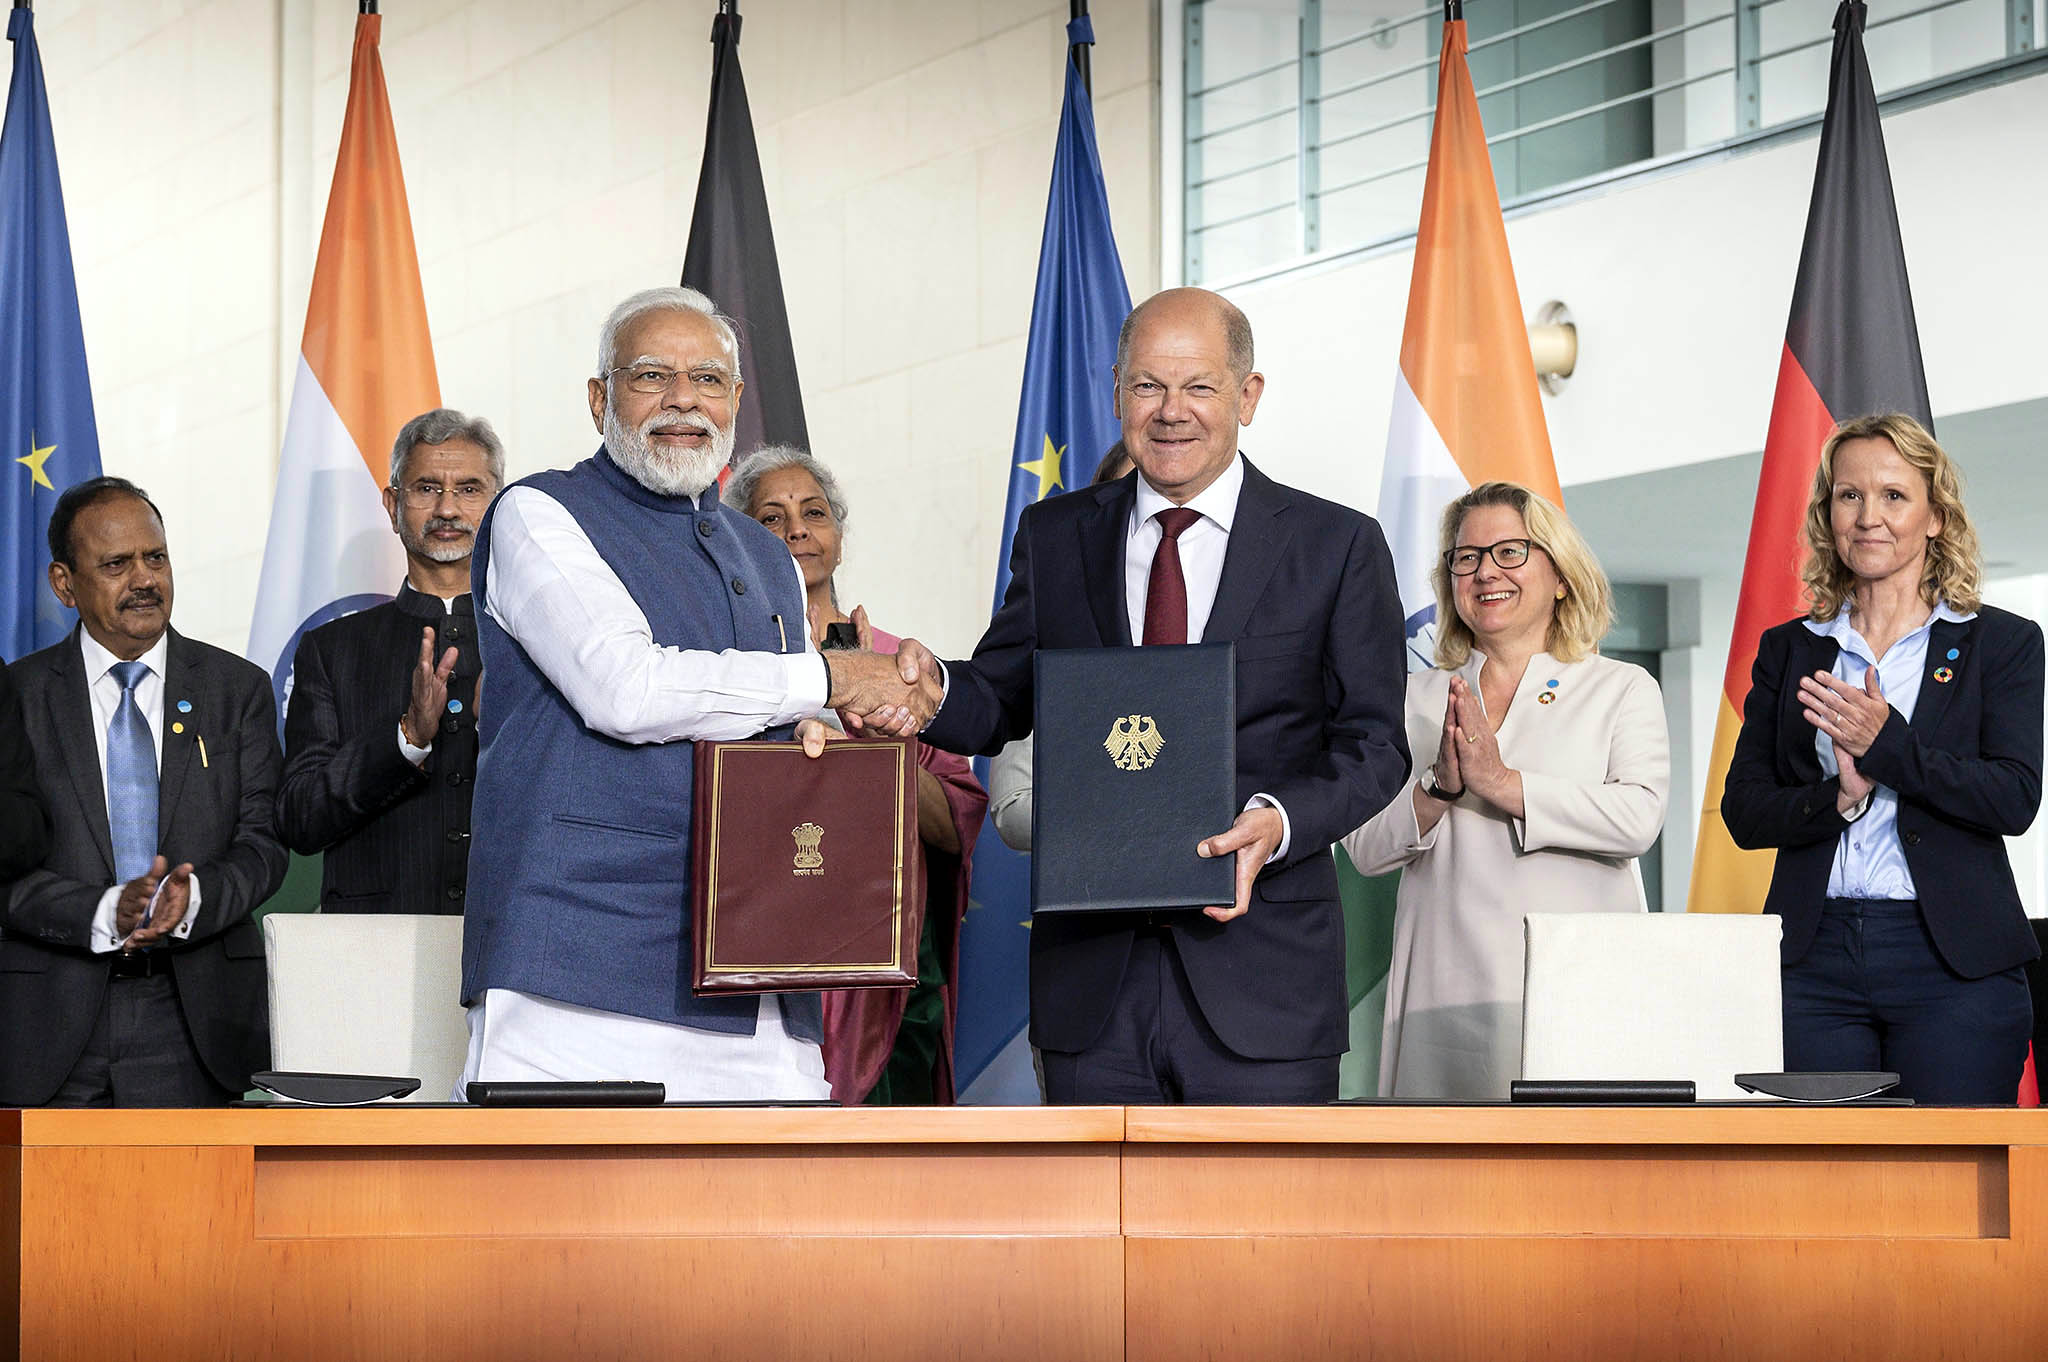 Indiens Premierminister Narendra Modi und Bundeskanzler Olaf Scholz am 2. Mai 2022 nach der Unterzeichnung der gemeinsamen Absichtserklärung zwischen der Bundesrepublik Deutschland und der Republik Indien über die Partnerschaft für grüne und nachhaltige Entwicklung